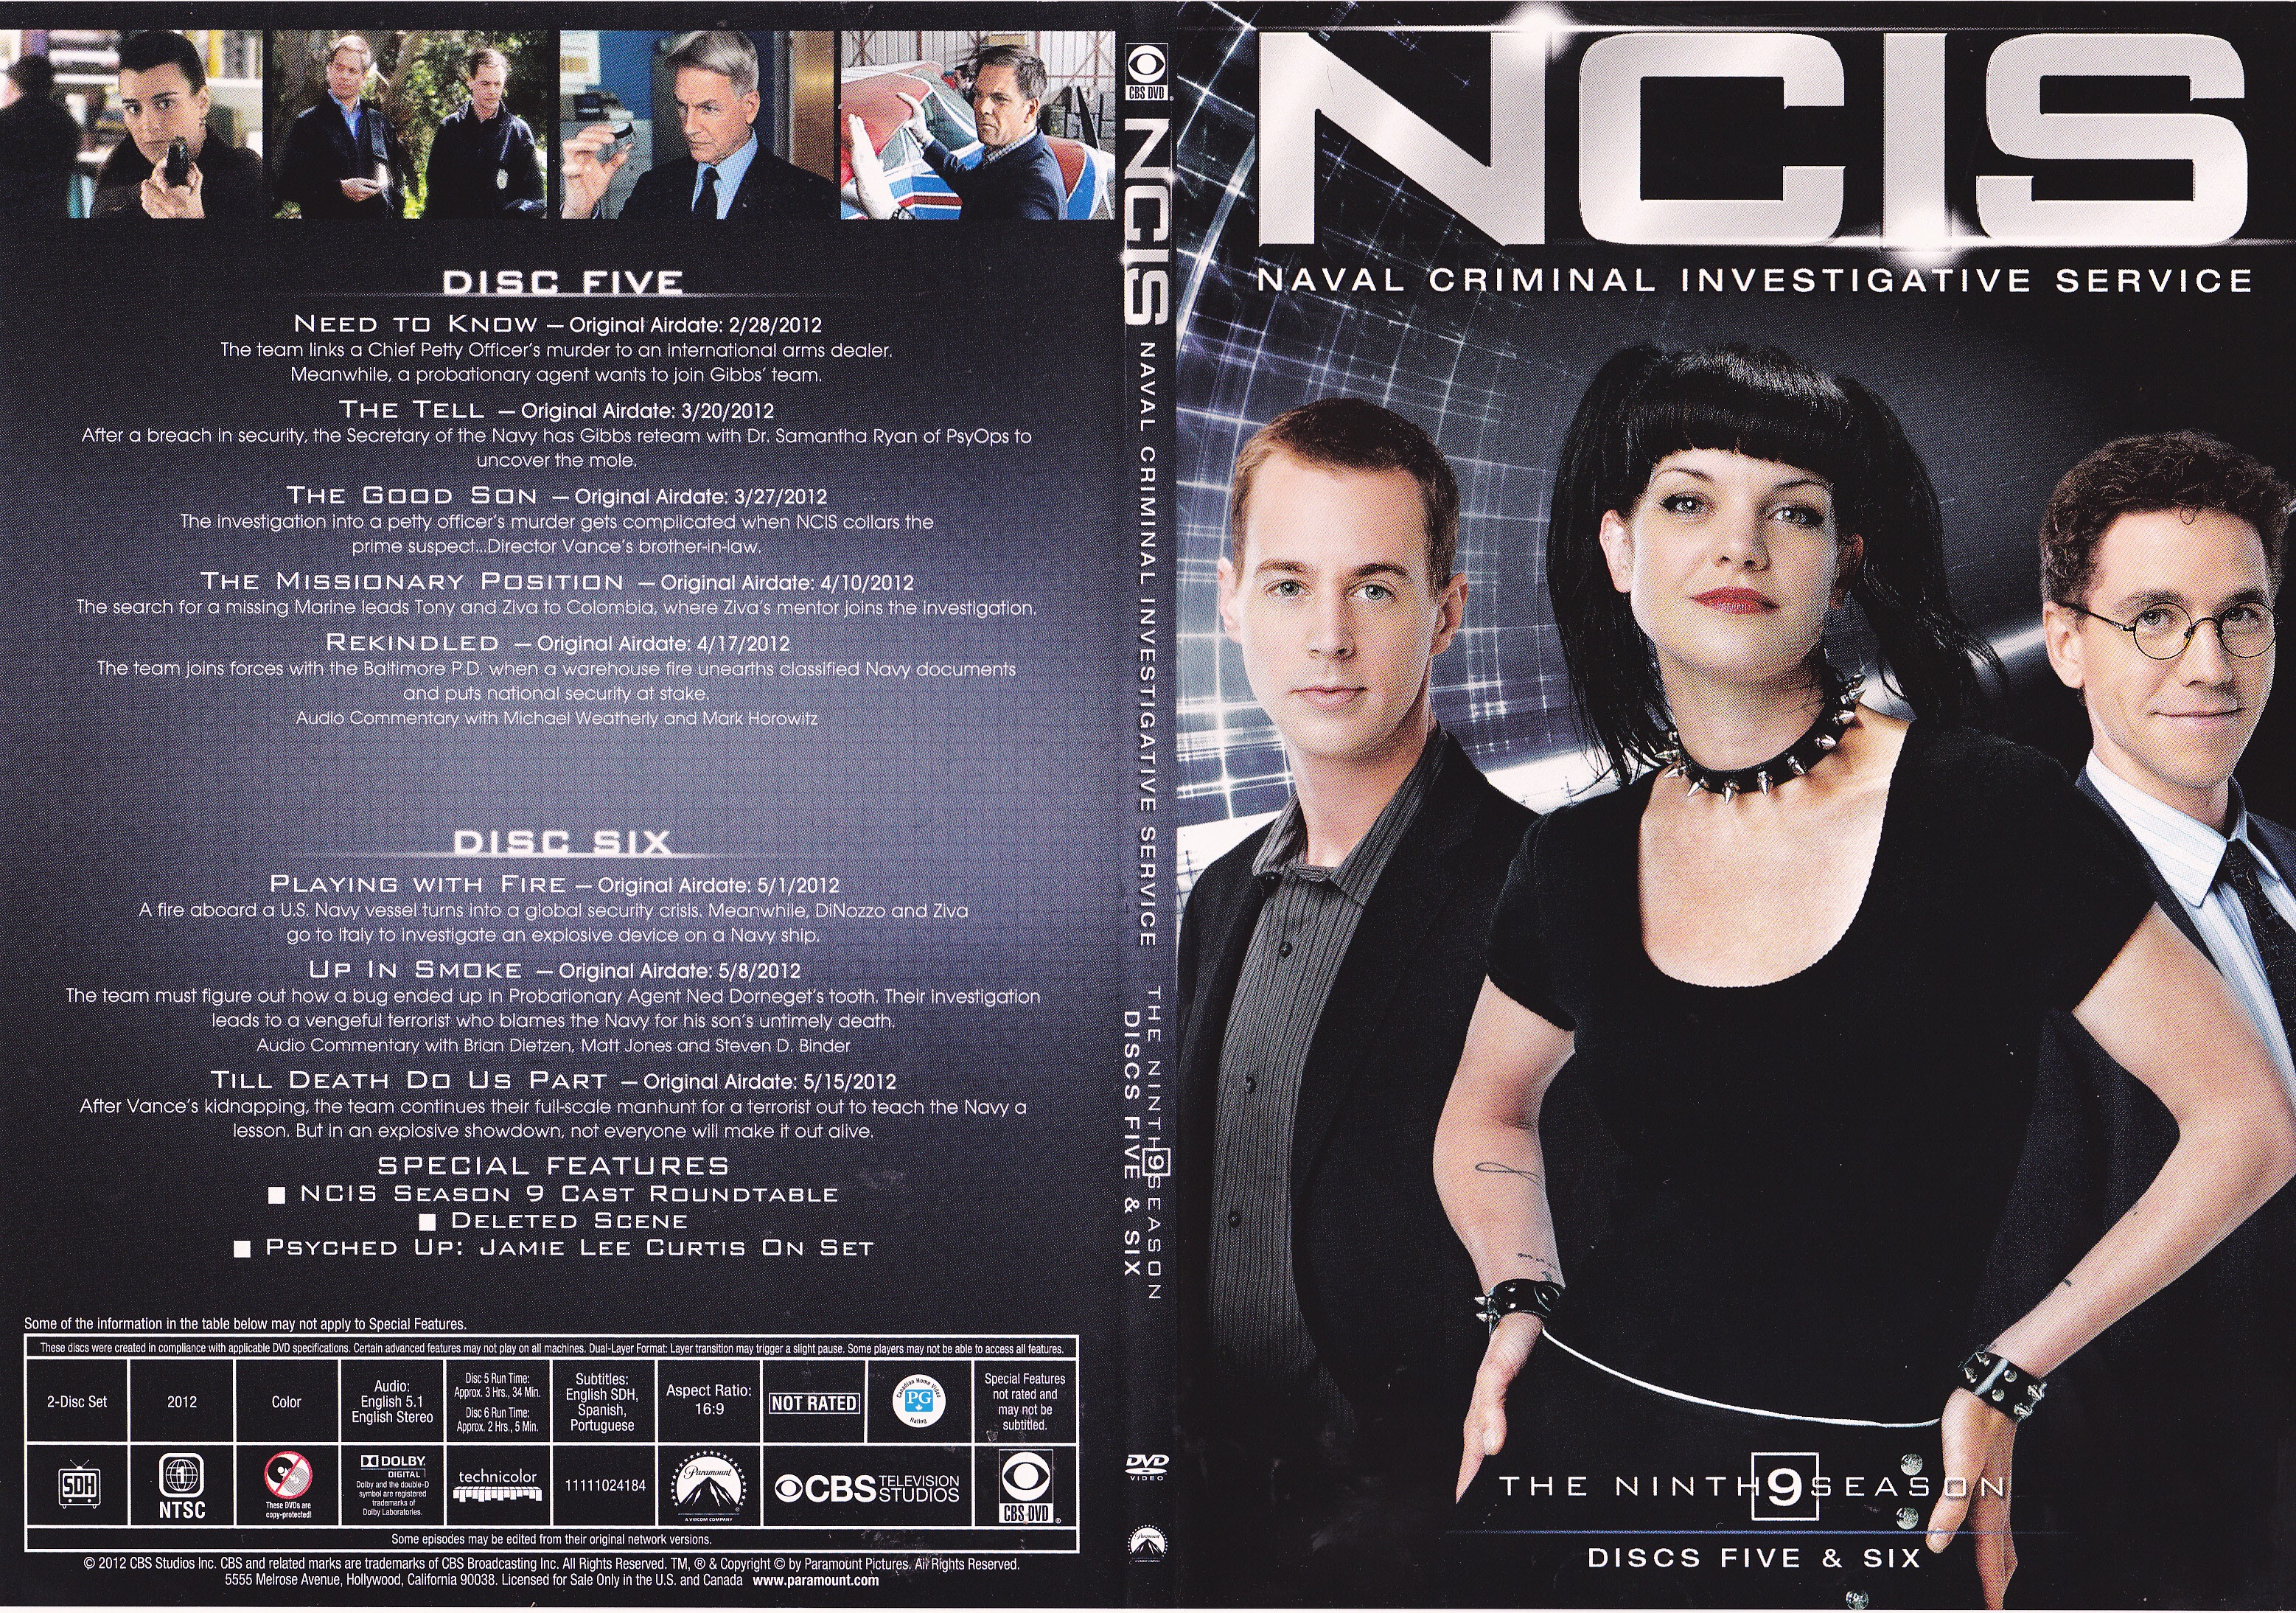 Jaquette DVD NCIS Saison 9 DVD 3 (Canadienne)